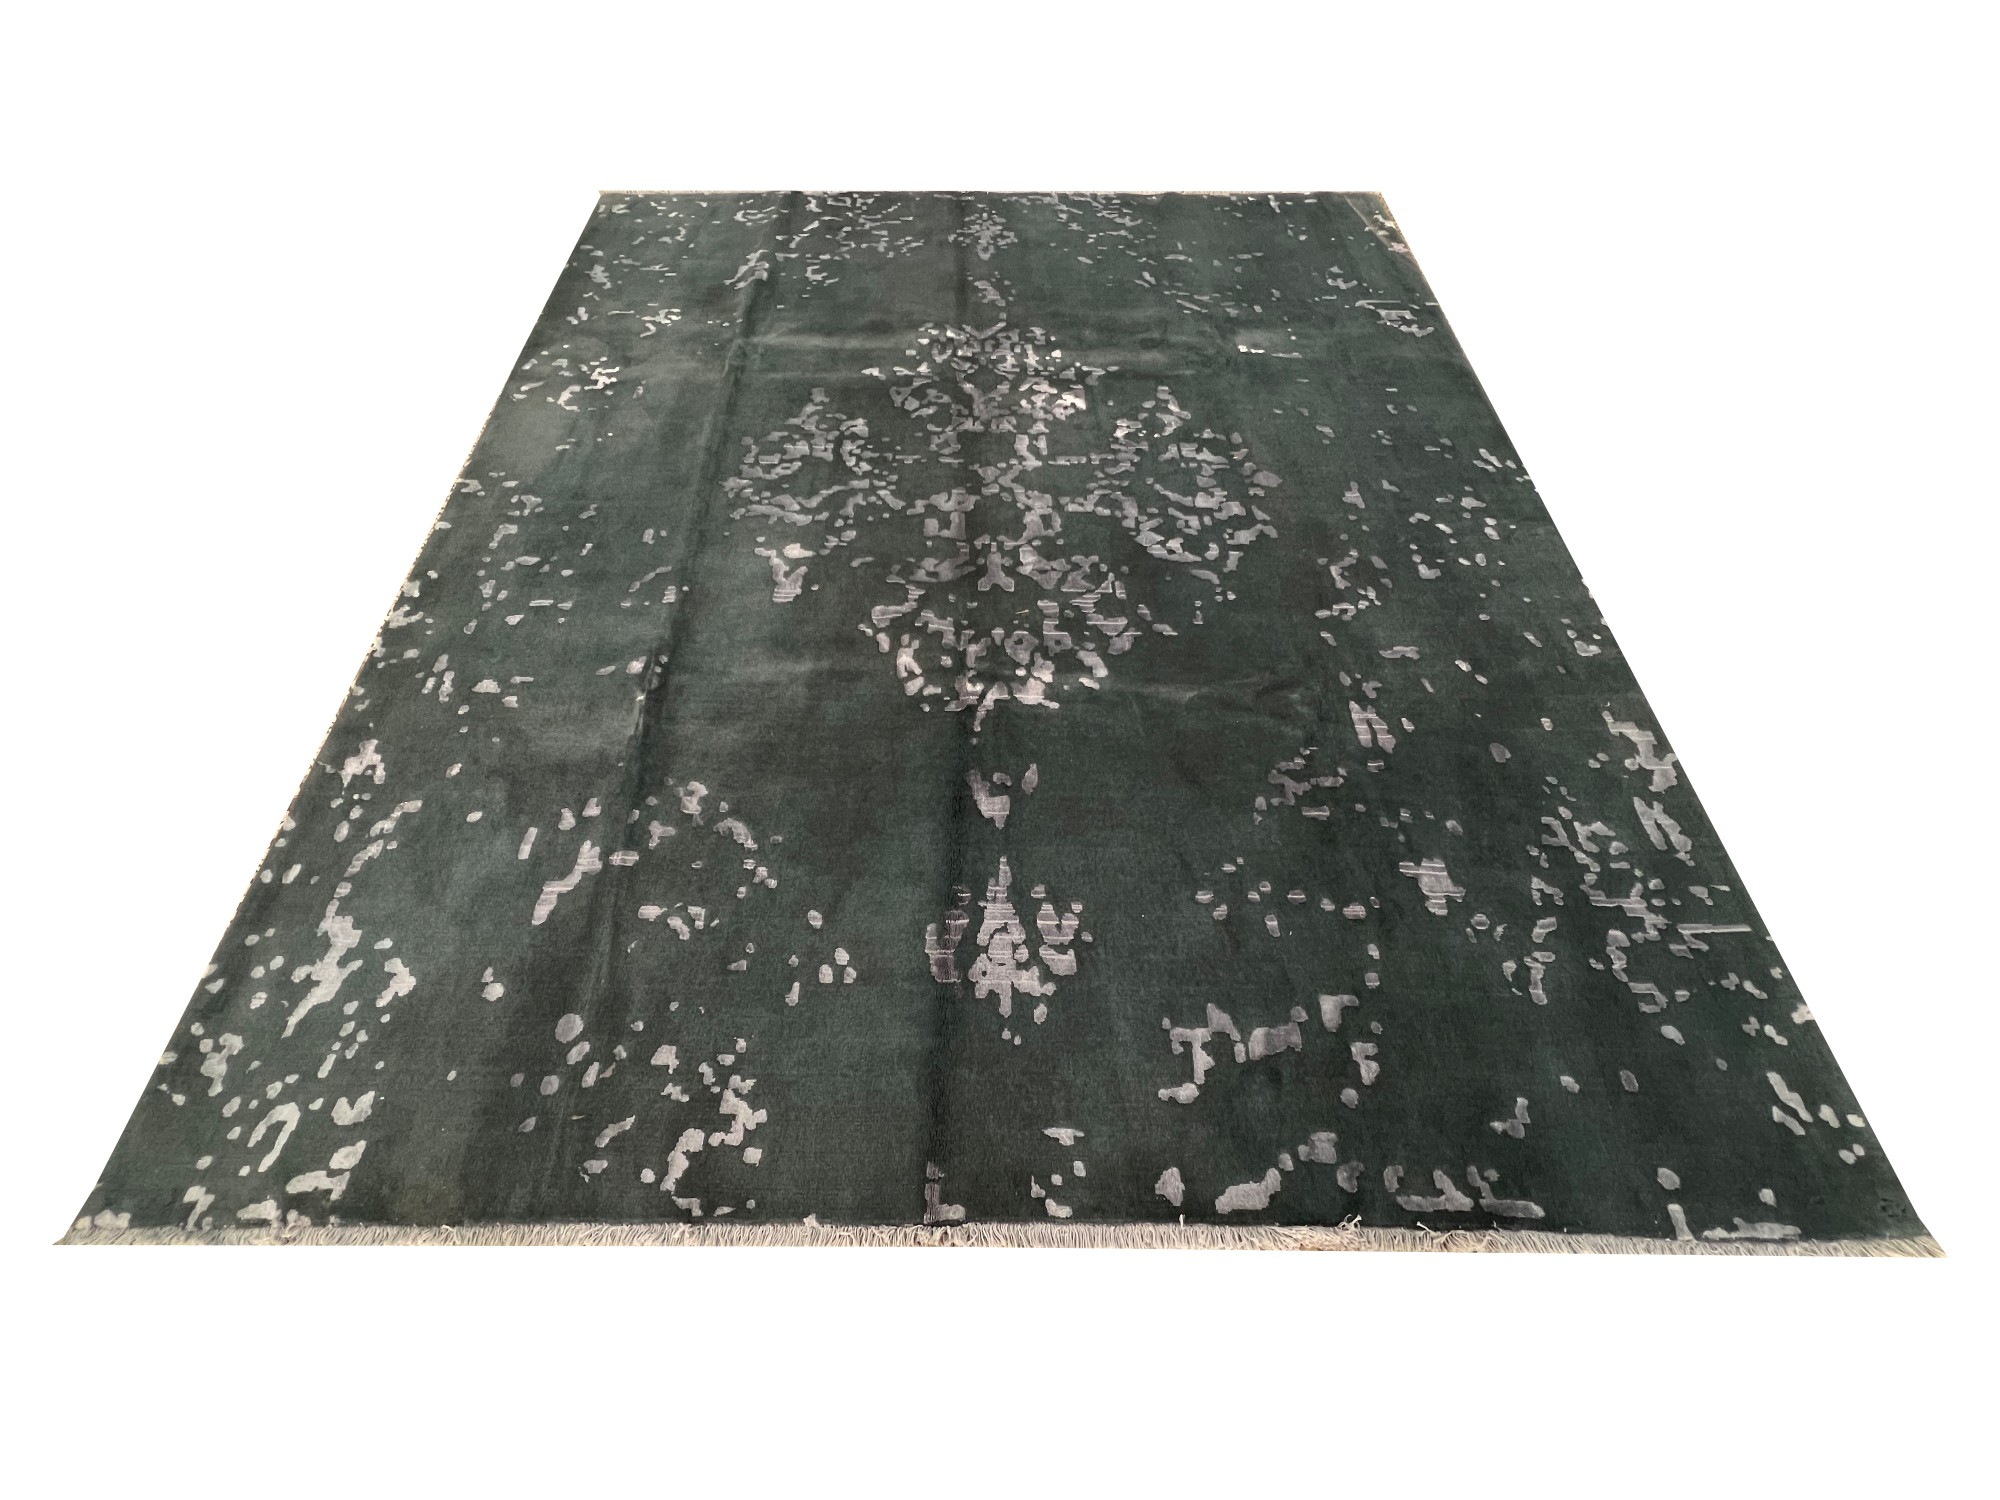 فرش پشمی ماشینی طبیعی و ارگانیک کد 0097 - زمینه طوسی پر رنگ - حاشیه طوسی پر رنگ